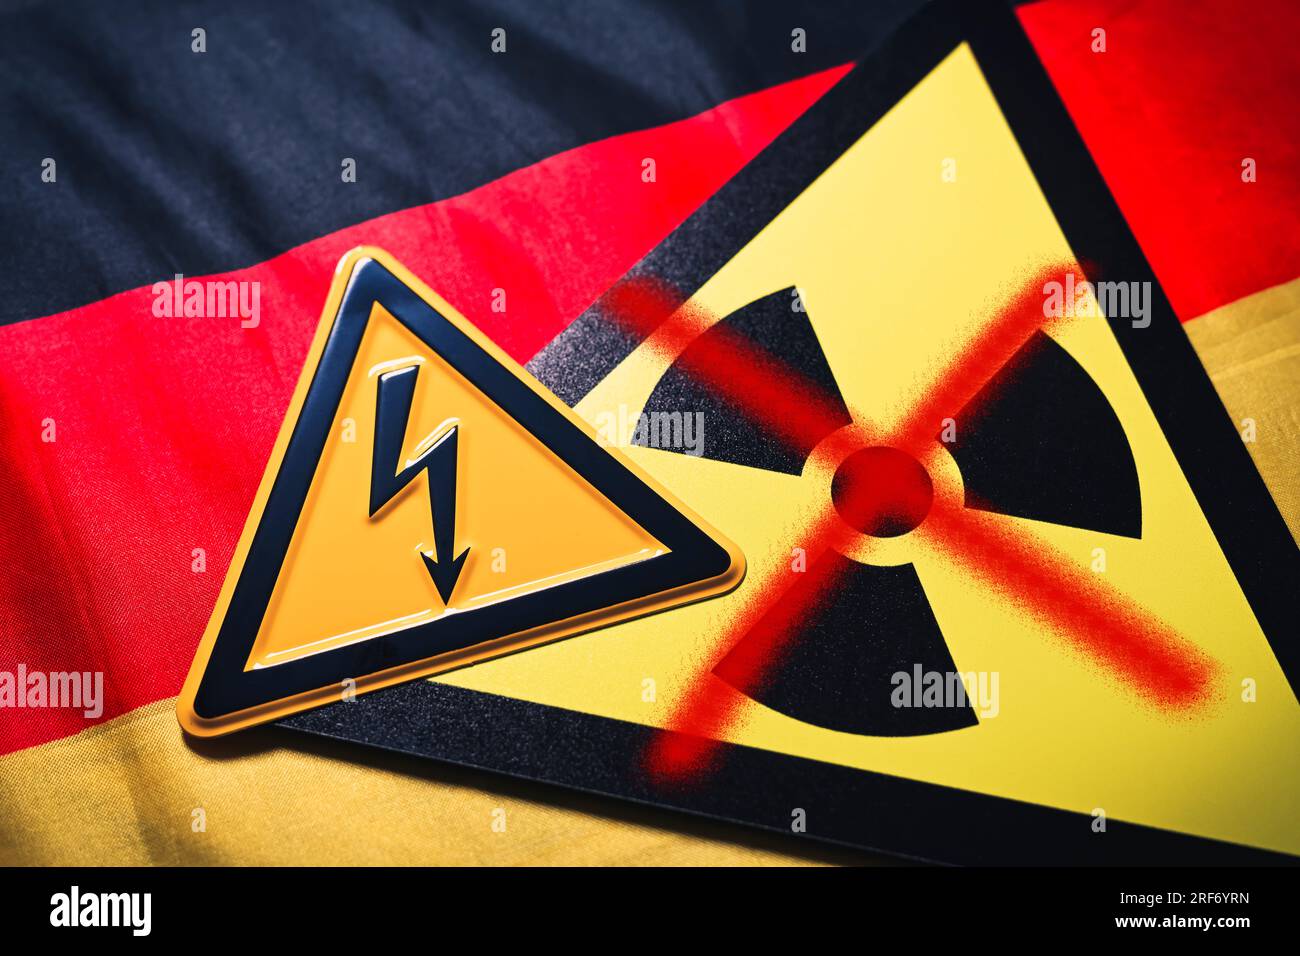 FOTOMONTAGE, Schild mit durchgestrichenem Radioaktivitätssymbol und Schild mit Strompfeil auf Deutschlandfahne, Symbolfoto für die AKW-Abschaltung Foto Stock